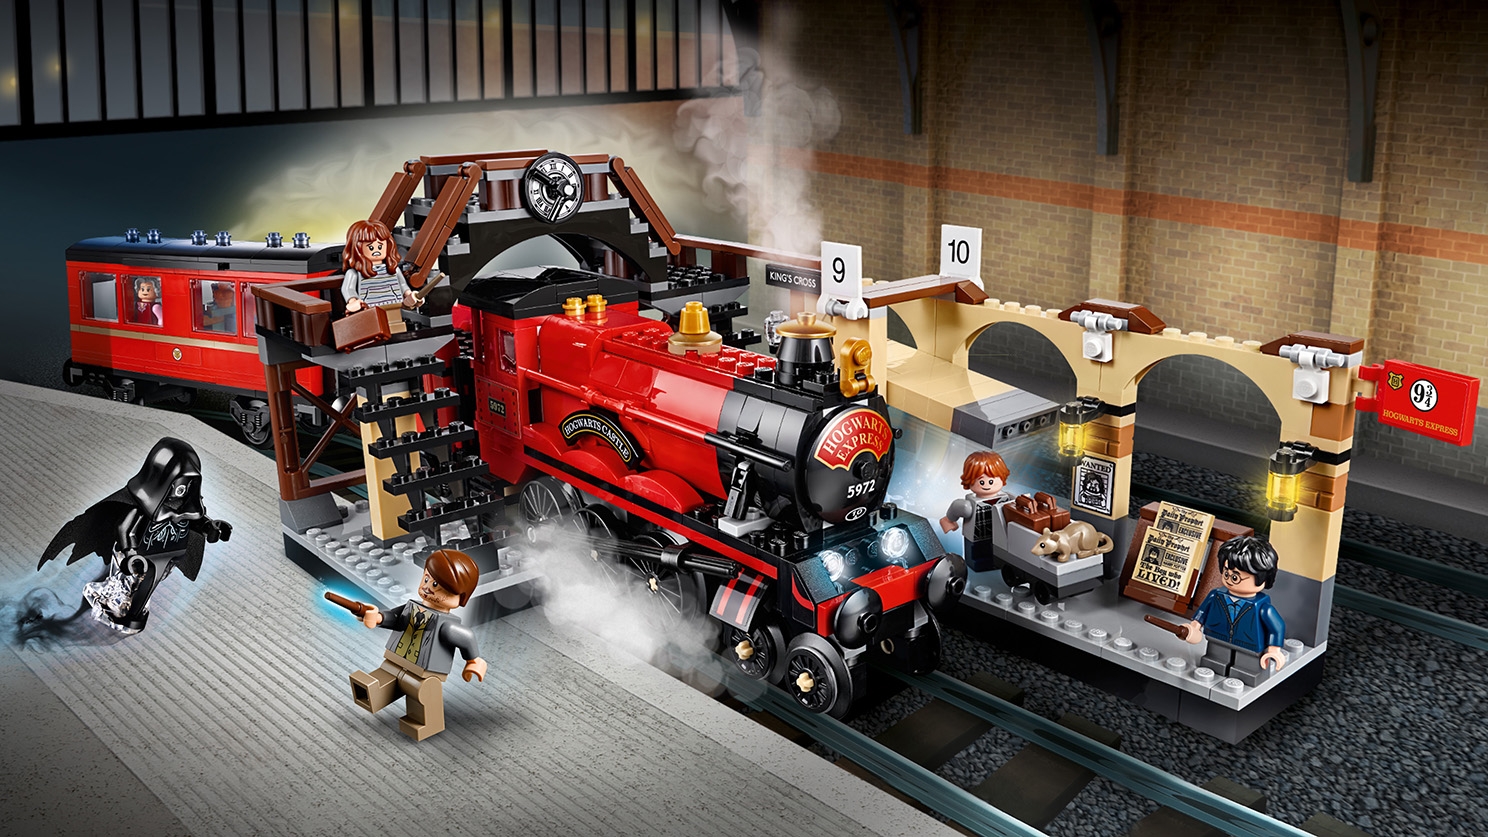 Hogwarts Express 75955 Lego Harry Potter Und Phantastische Tierwesen Sets Lego Com Fur Kinder